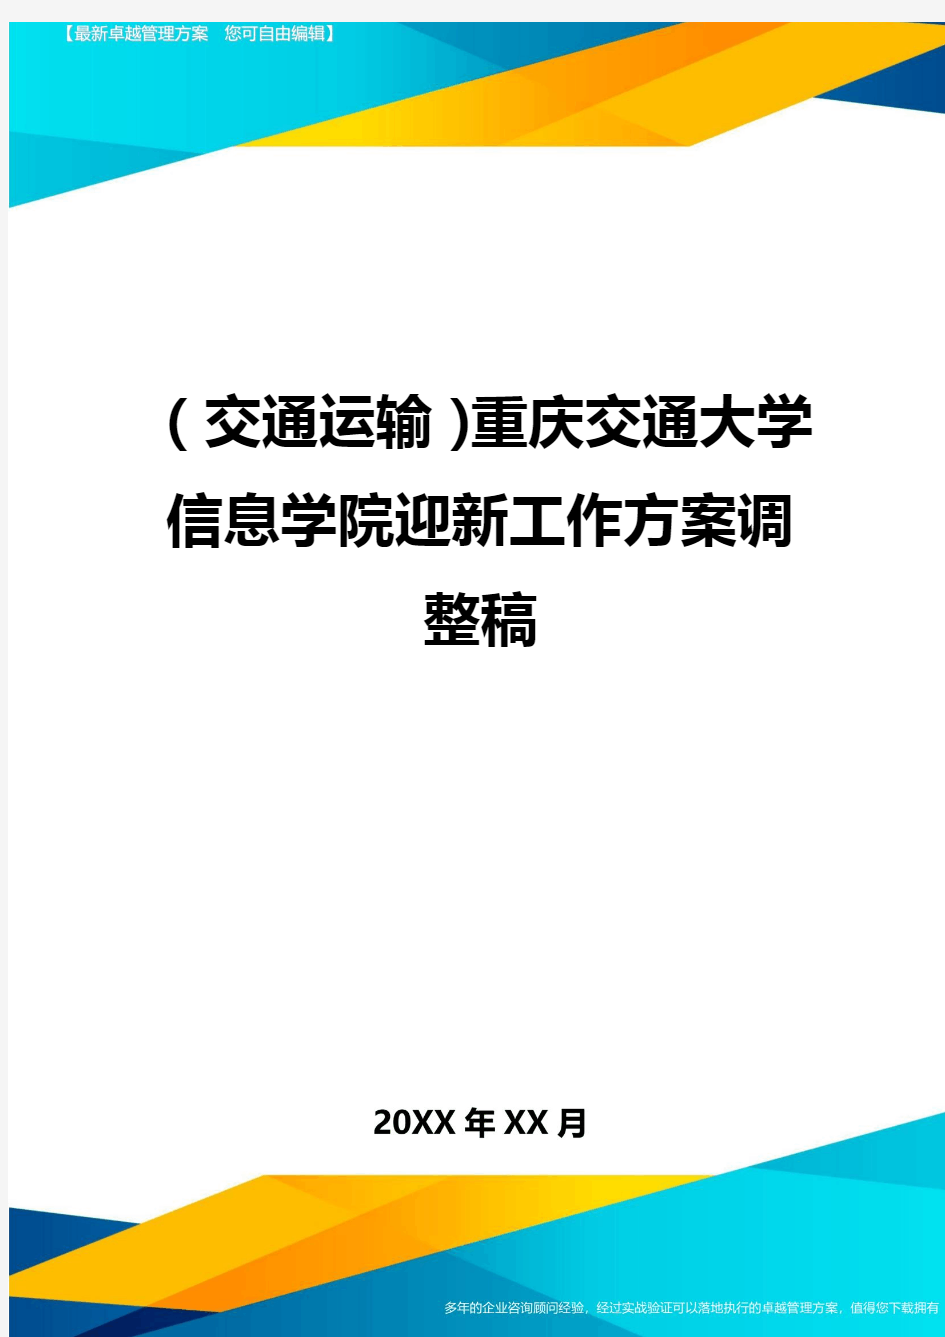 (交通运输)重庆交通大学信息学院迎新工作方案调整稿精编